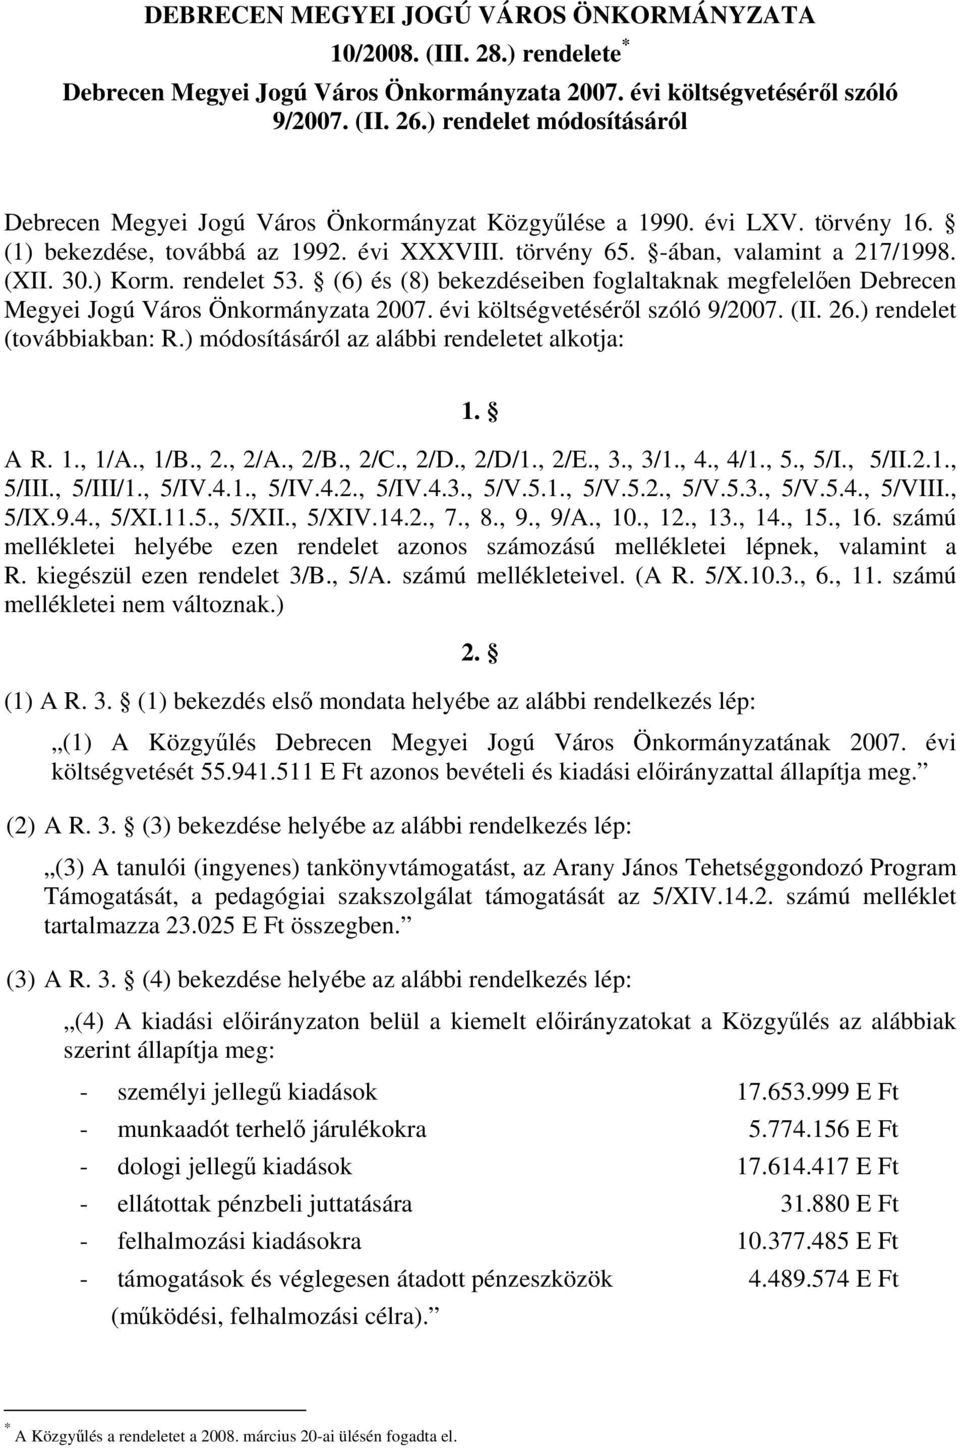 ) Korm. rendelet 53. (6) és (8) bekezdéseiben foglaltaknak megfelelően Debrecen Megyei Jogú Város Önkormányzata 2007. évi költségvetéséről szóló 9/2007. (II. 26.) rendelet (továbbiakban: R.